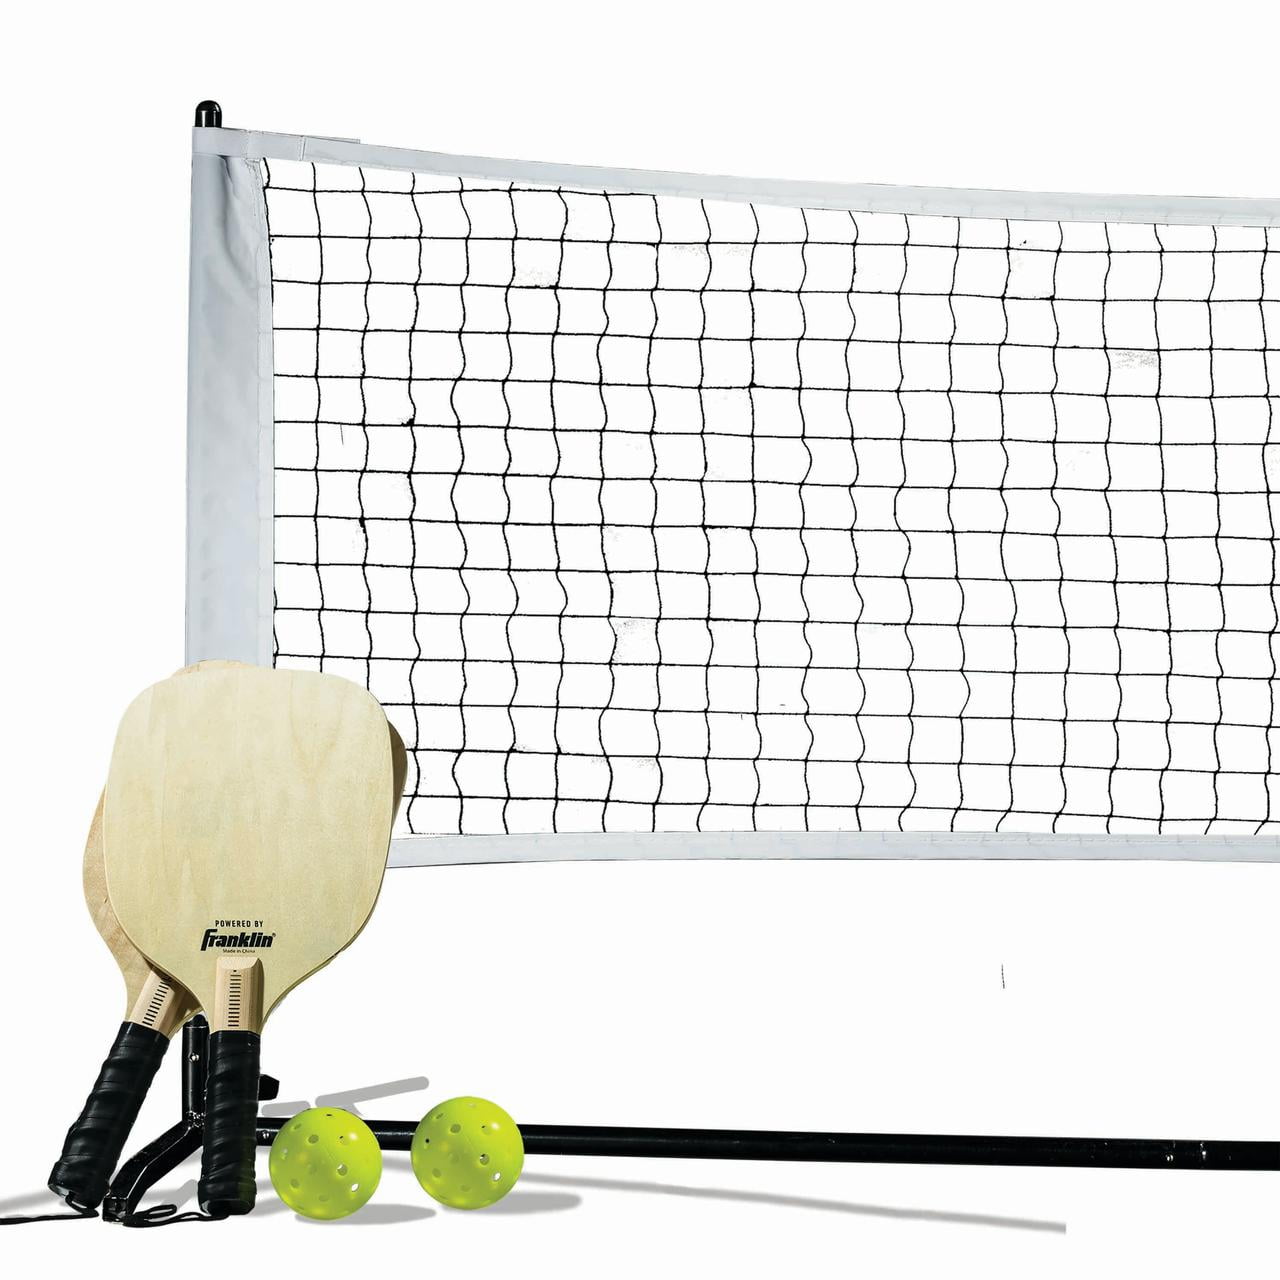 Inclu... Franklin Sports Half Court Size Pickleball Net by Franklin Pickleball 